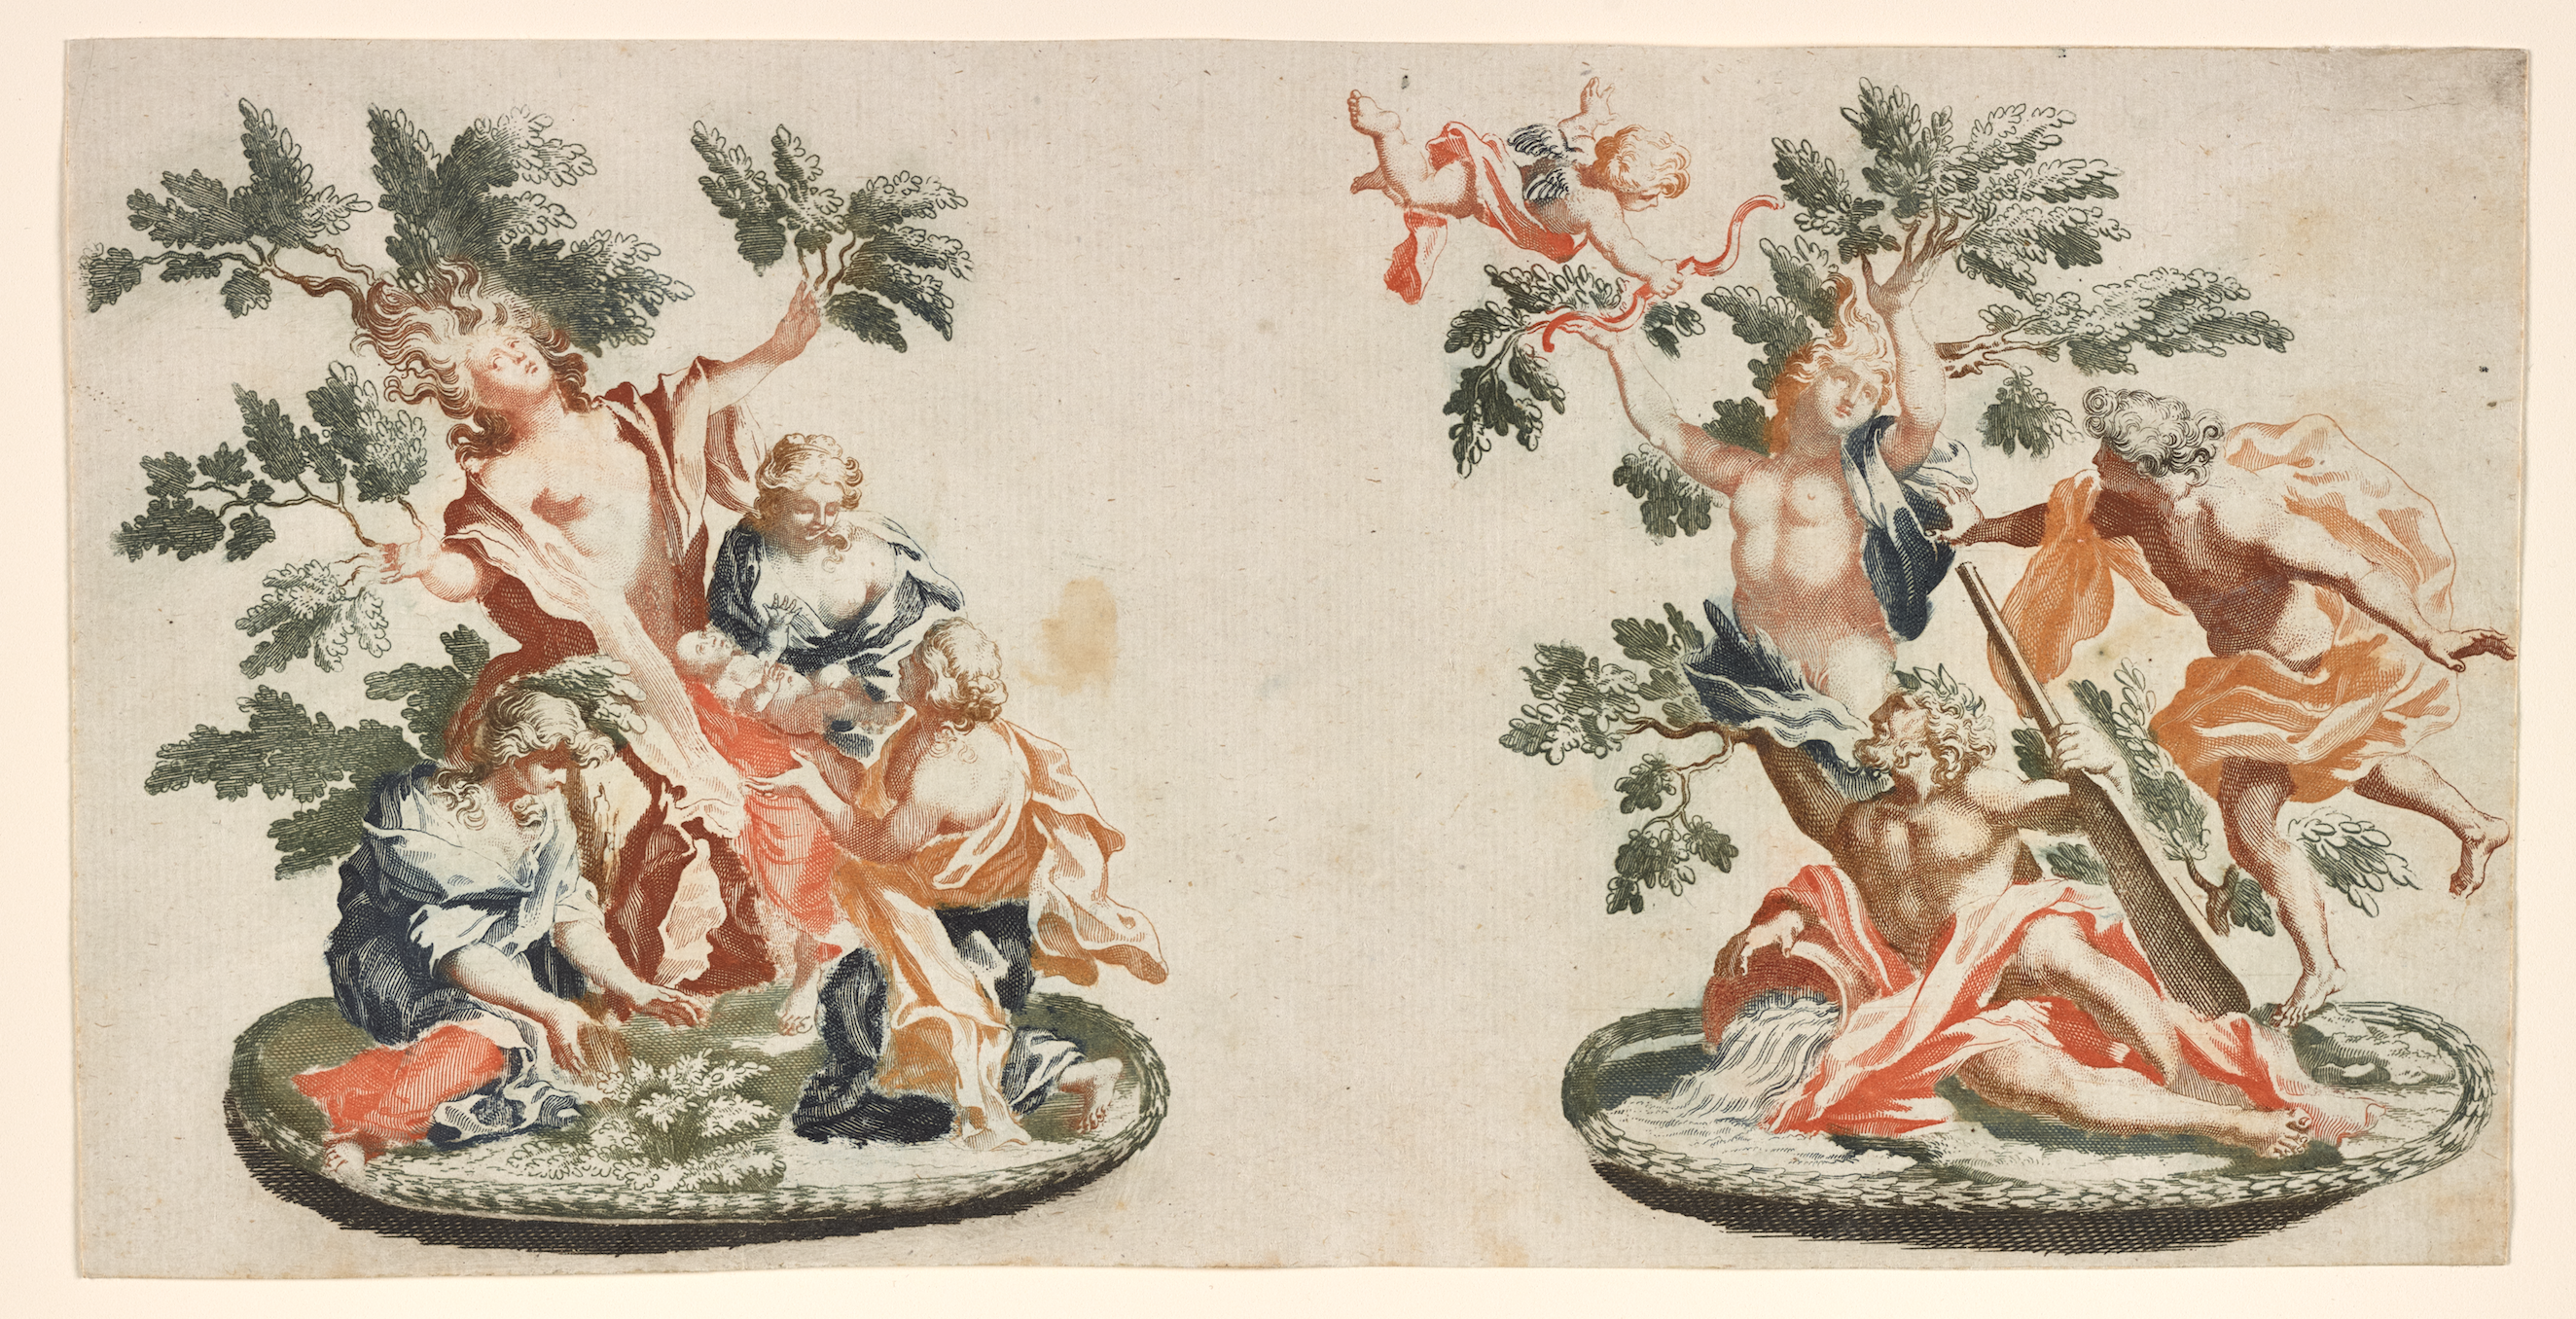 Kunst koken in de tijd van De groote waereld in ’t kleen geschildert (1692)